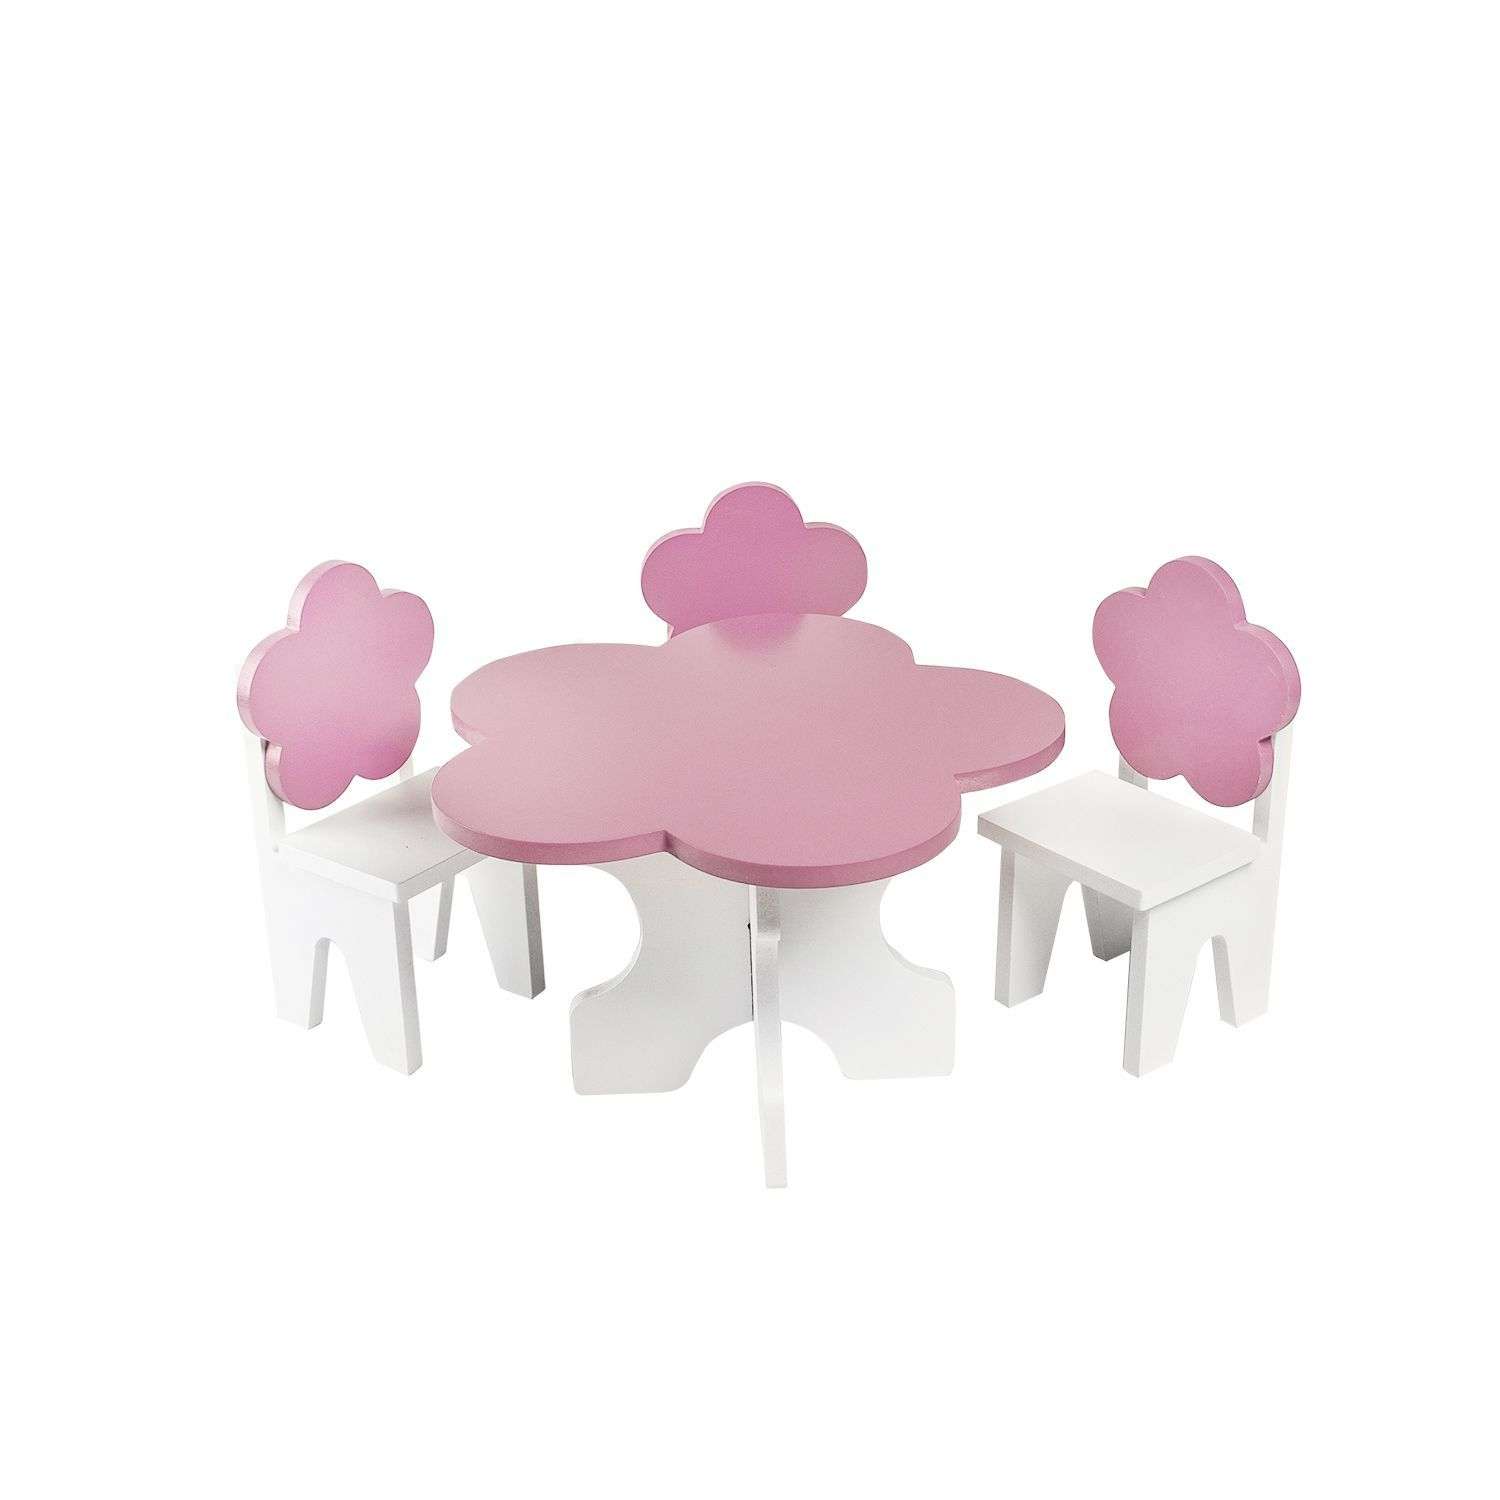 Мебель для кукол Paremo Цветок набор 4предмета Розовый PFD120-43 PFD120-43 - фото 1